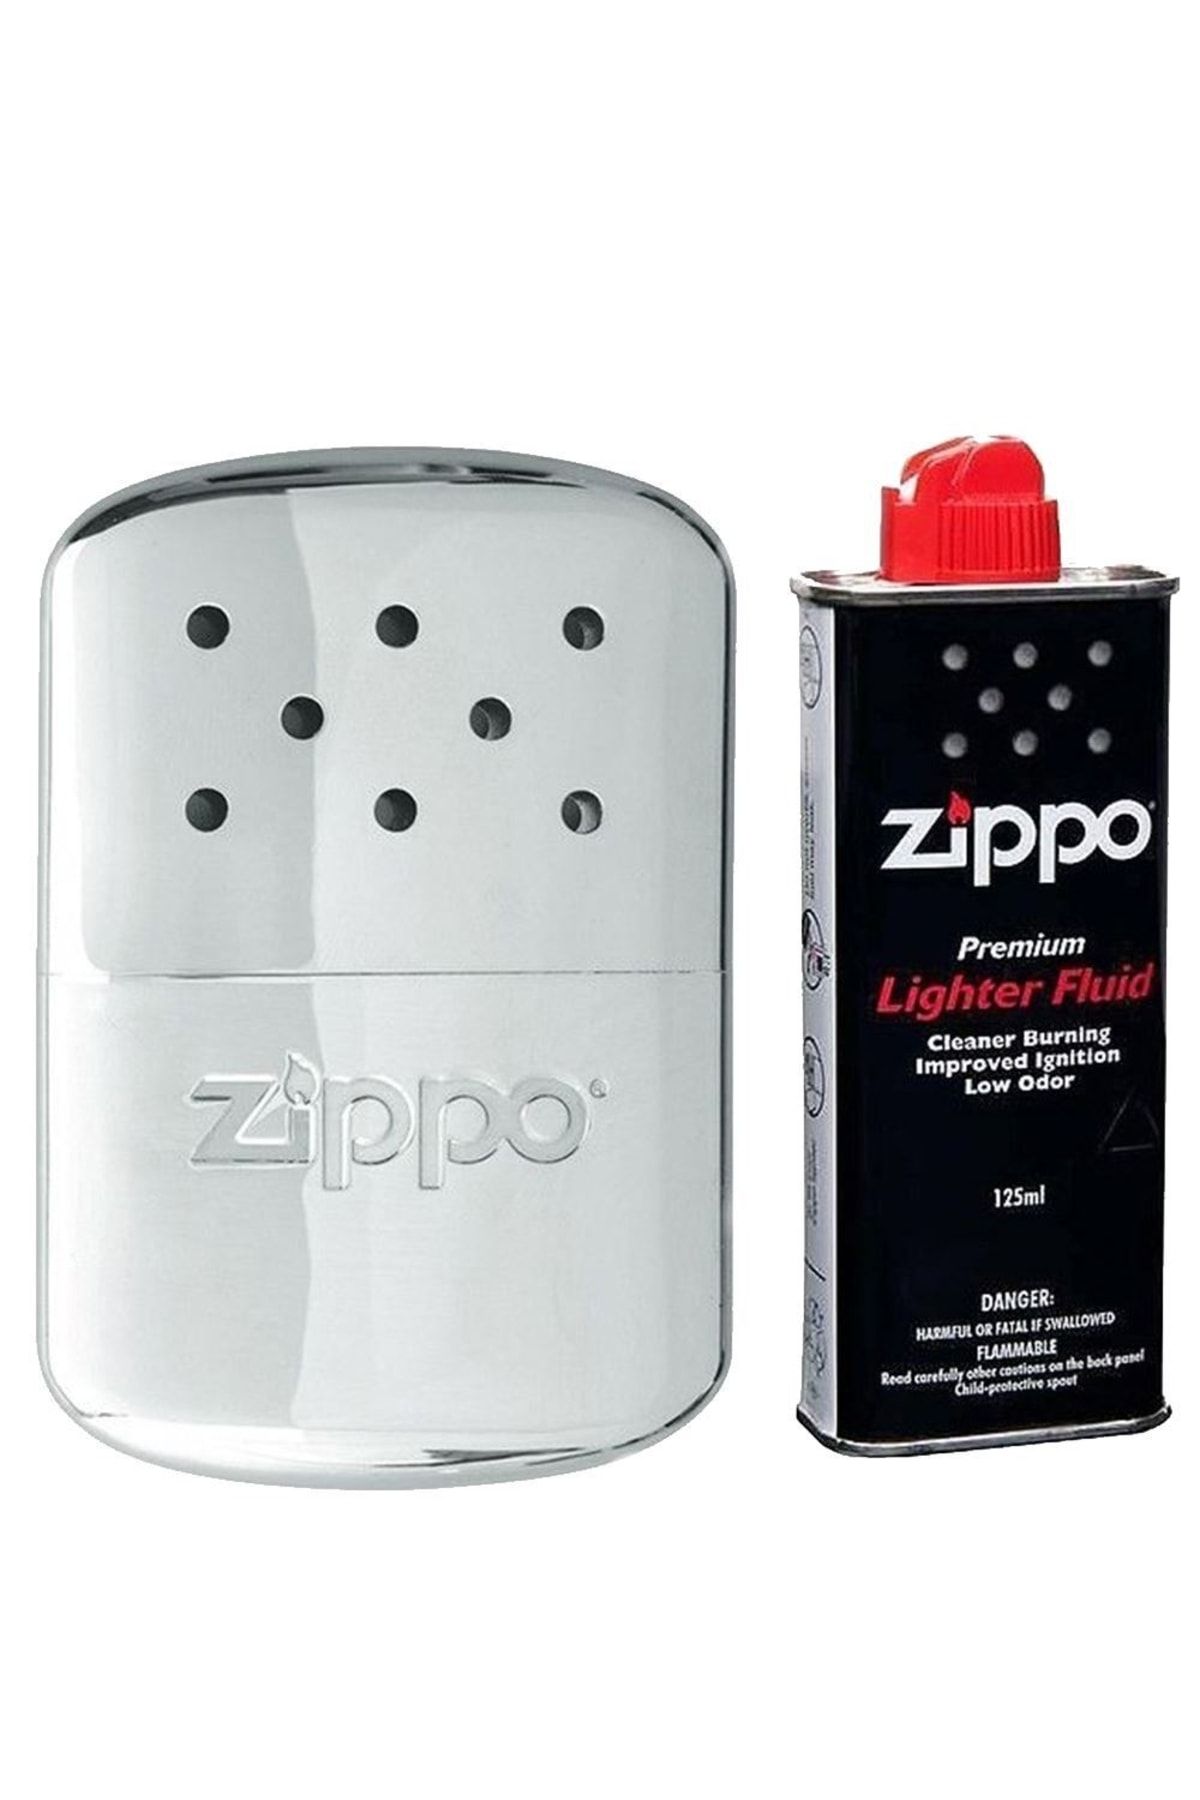 Zippo Benzinli 12saat Hand Warmer El Isıtıcısı Cep Sobası 40365x